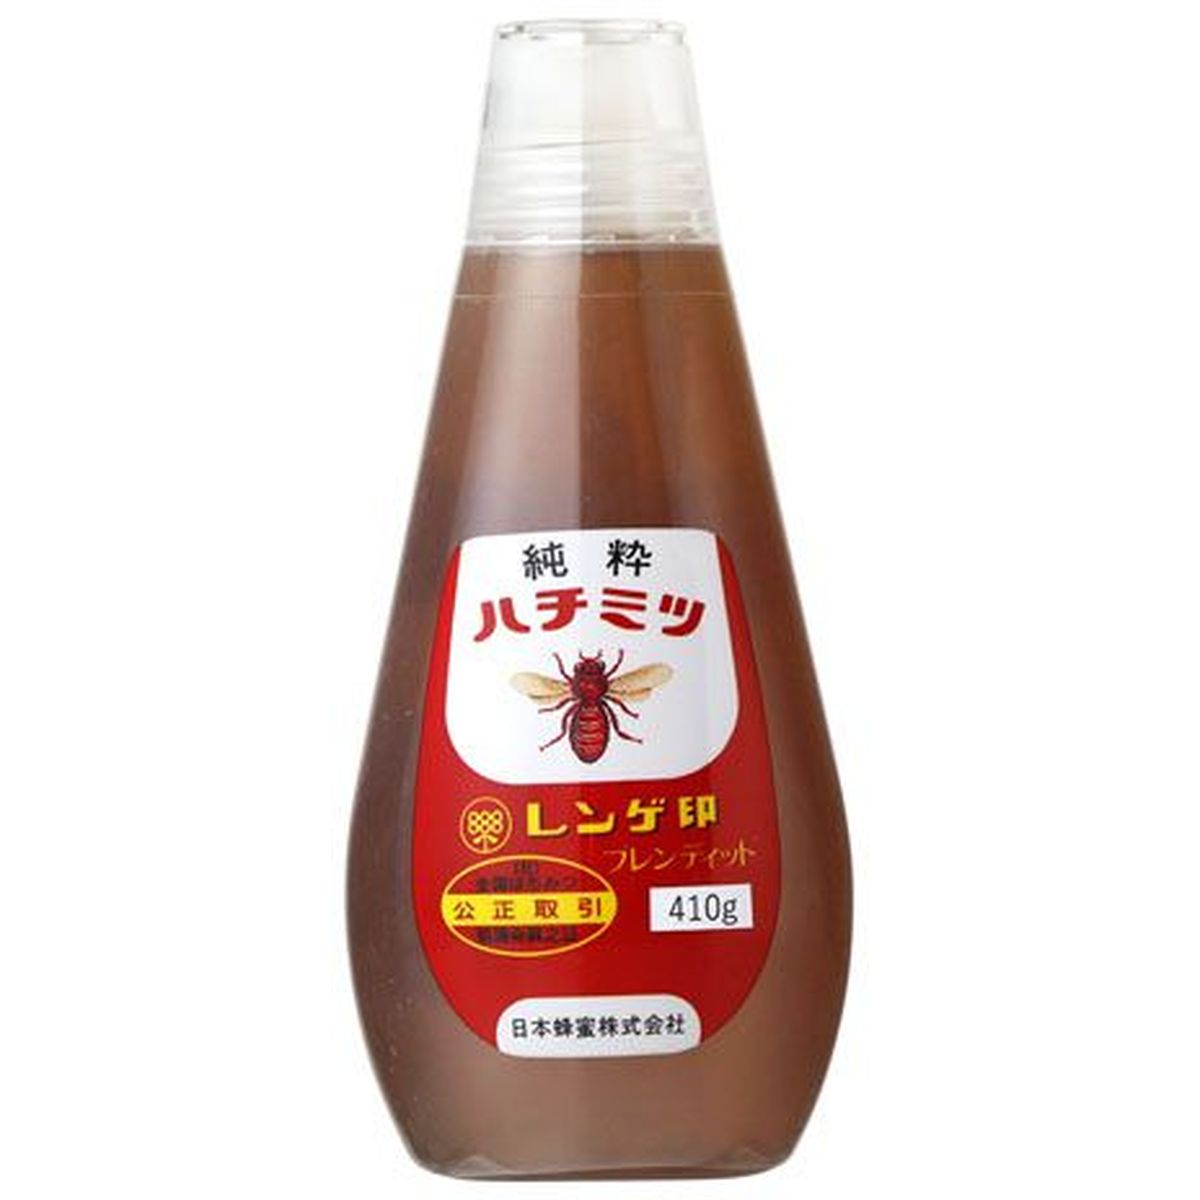 【10個入リ】レンゲ印 純粋ハチミツ 410g